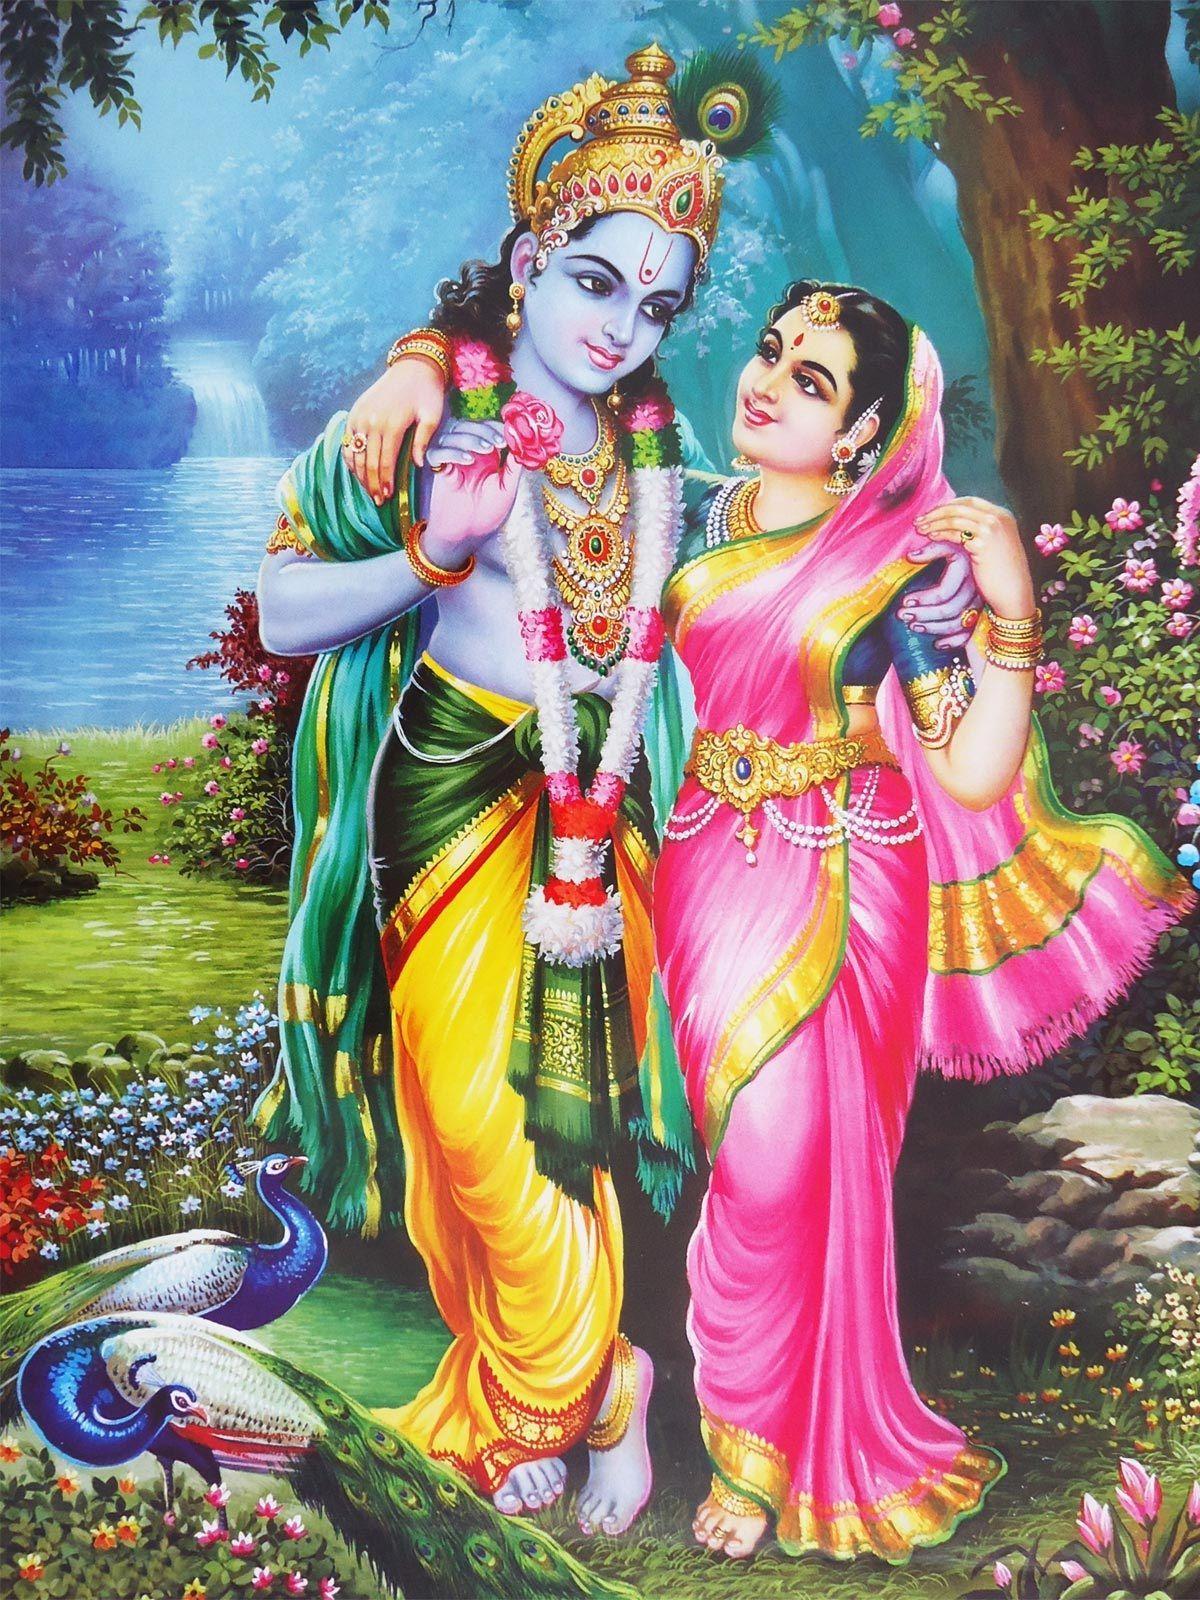 Lord Shree Krishna And Radhaji Love. For Me. Krishna